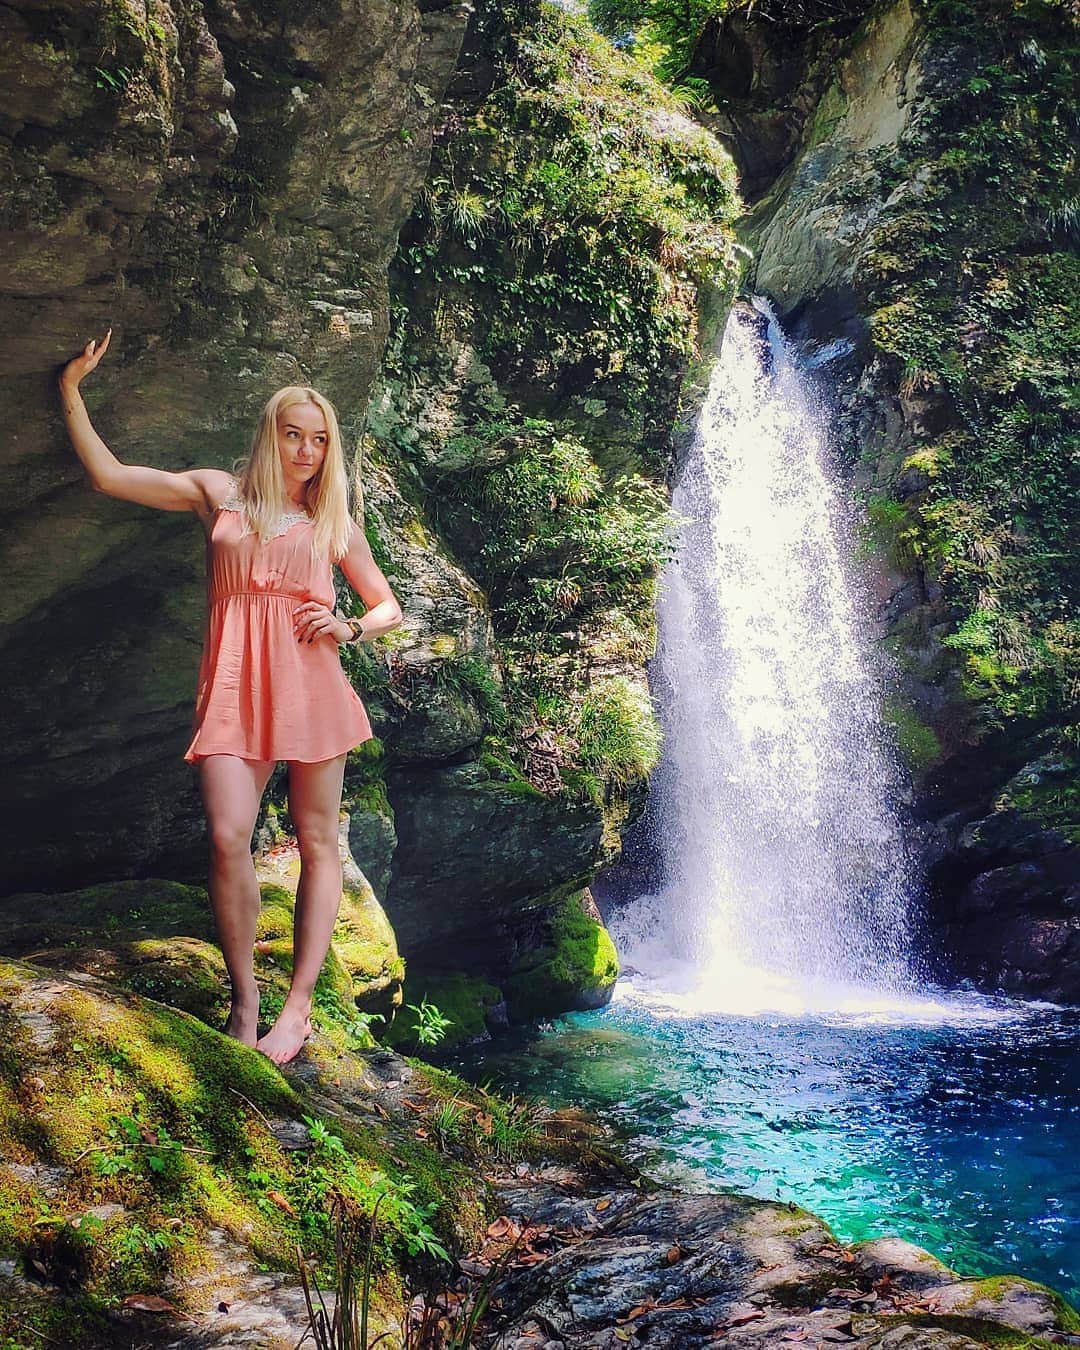 アガタ・フォルカシェブイチのインスタグラム：「In Paradise 🙌 #polishgirl in #japan #日本 #amazing #views #nature #waterfall #滝 #にこ淵 #nikobuchi #landscape #postcard #model #kawaiigirl #travelgirl #travel #travelgram #water #summer #blonde #かわいい #photooftheday #photoshoot #bestoftheday #asiangirl  #girlswhotravel #beautiful #trip」